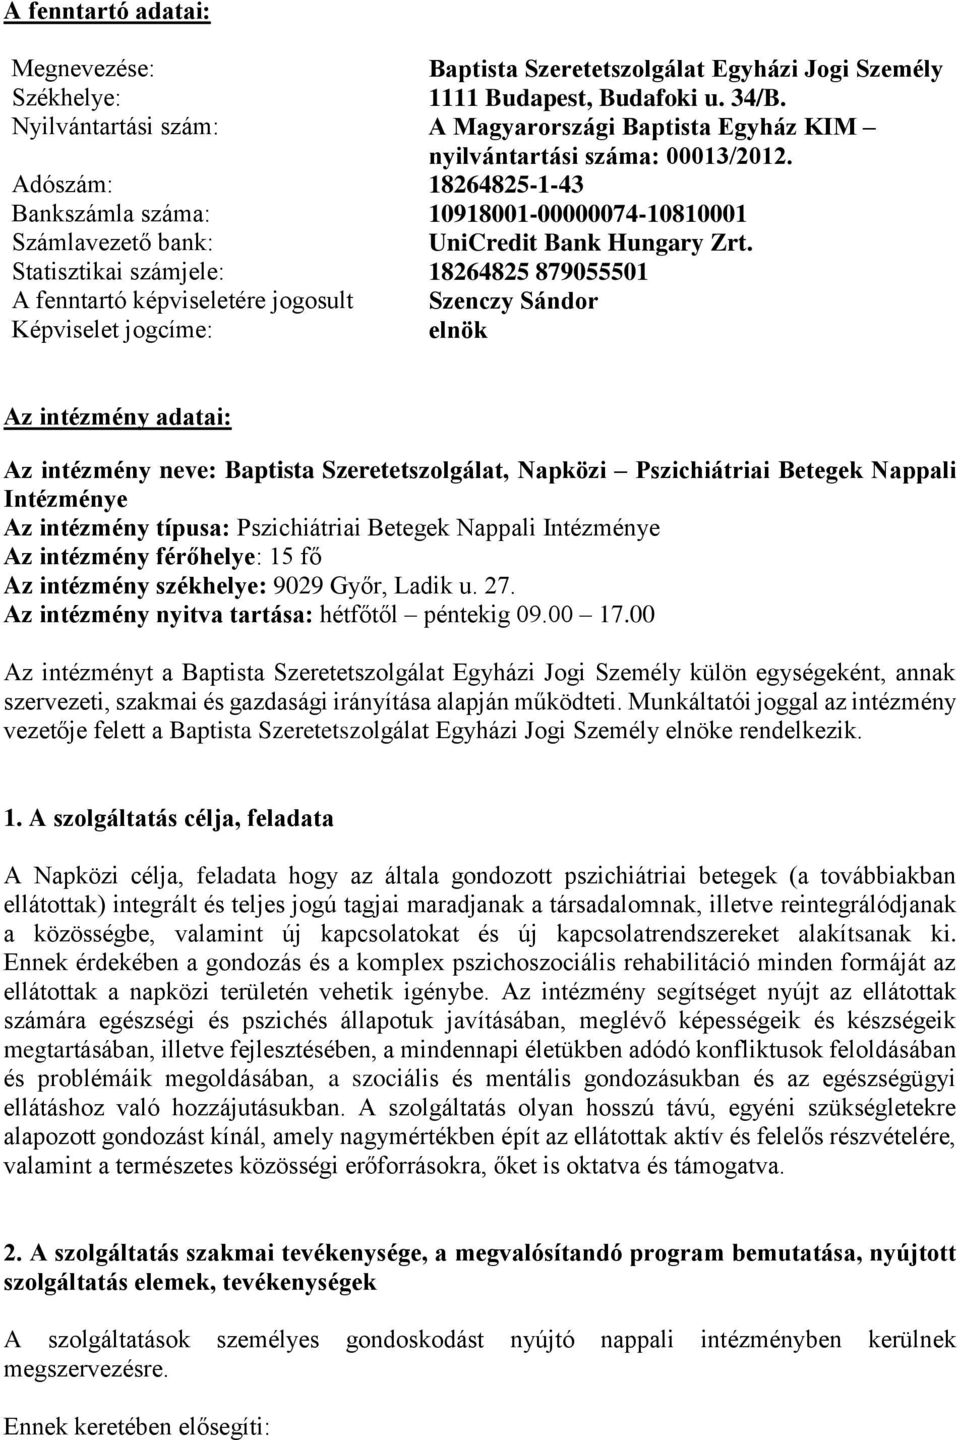 Adószám: 18264825-1-43 Bankszámla száma: 10918001-00000074-10810001 Számlavezető bank: Statisztikai számjele: UniCredit Bank Hungary Zrt.